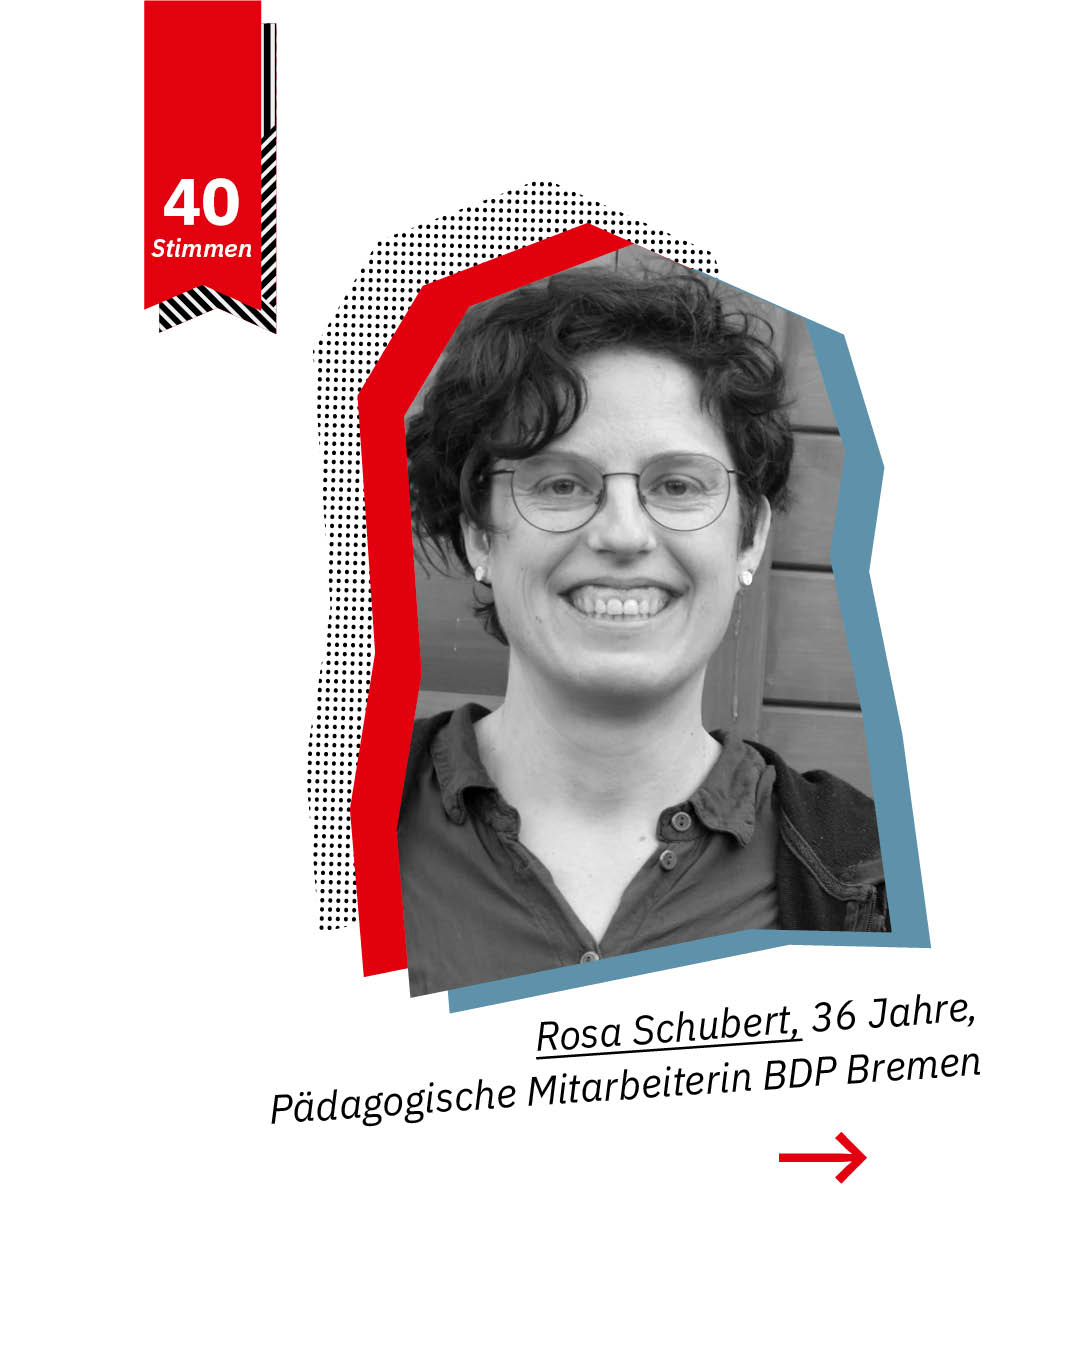 Statement 40 Jahre Gleichberechtigung, Rosa Schubert, Pädagogische Mitarbeiterin BDP Bremen